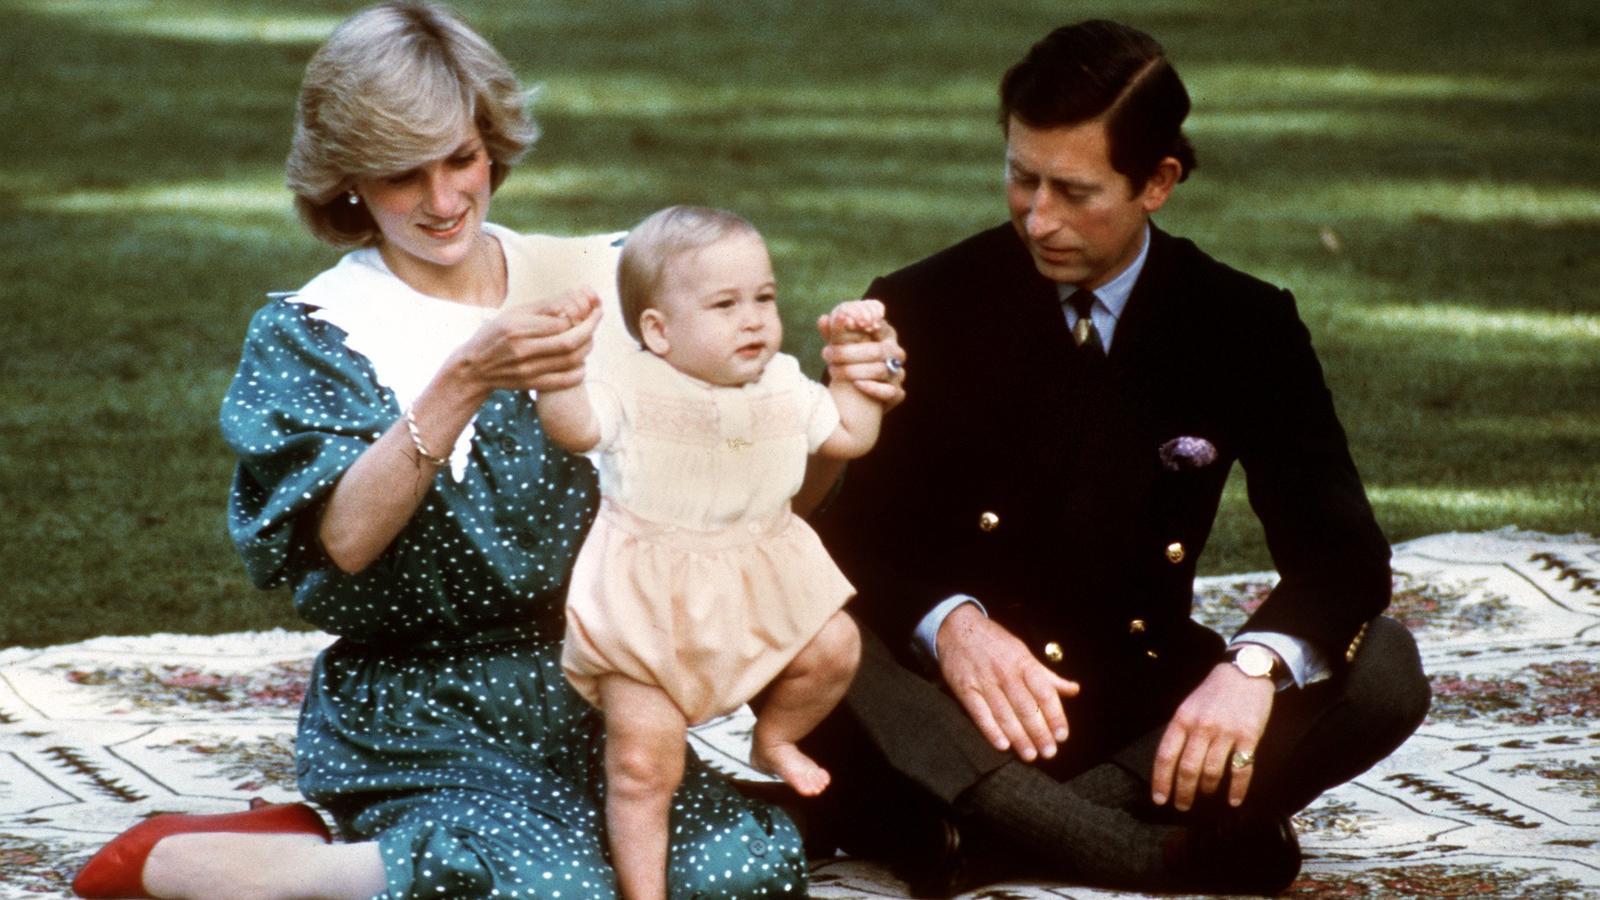 ARCHIV - Zum Staatsbesuch nach Australien reisten Prinzessin Diana und Prinz Charles mit Baby William, aufgenommen am 23.4.1983. Am 31.08.2017 jährt sich zum zwanzigsten Mal der Todestag von Prinzessin Diana, die bei einem Autounfall in Paris ums Leb